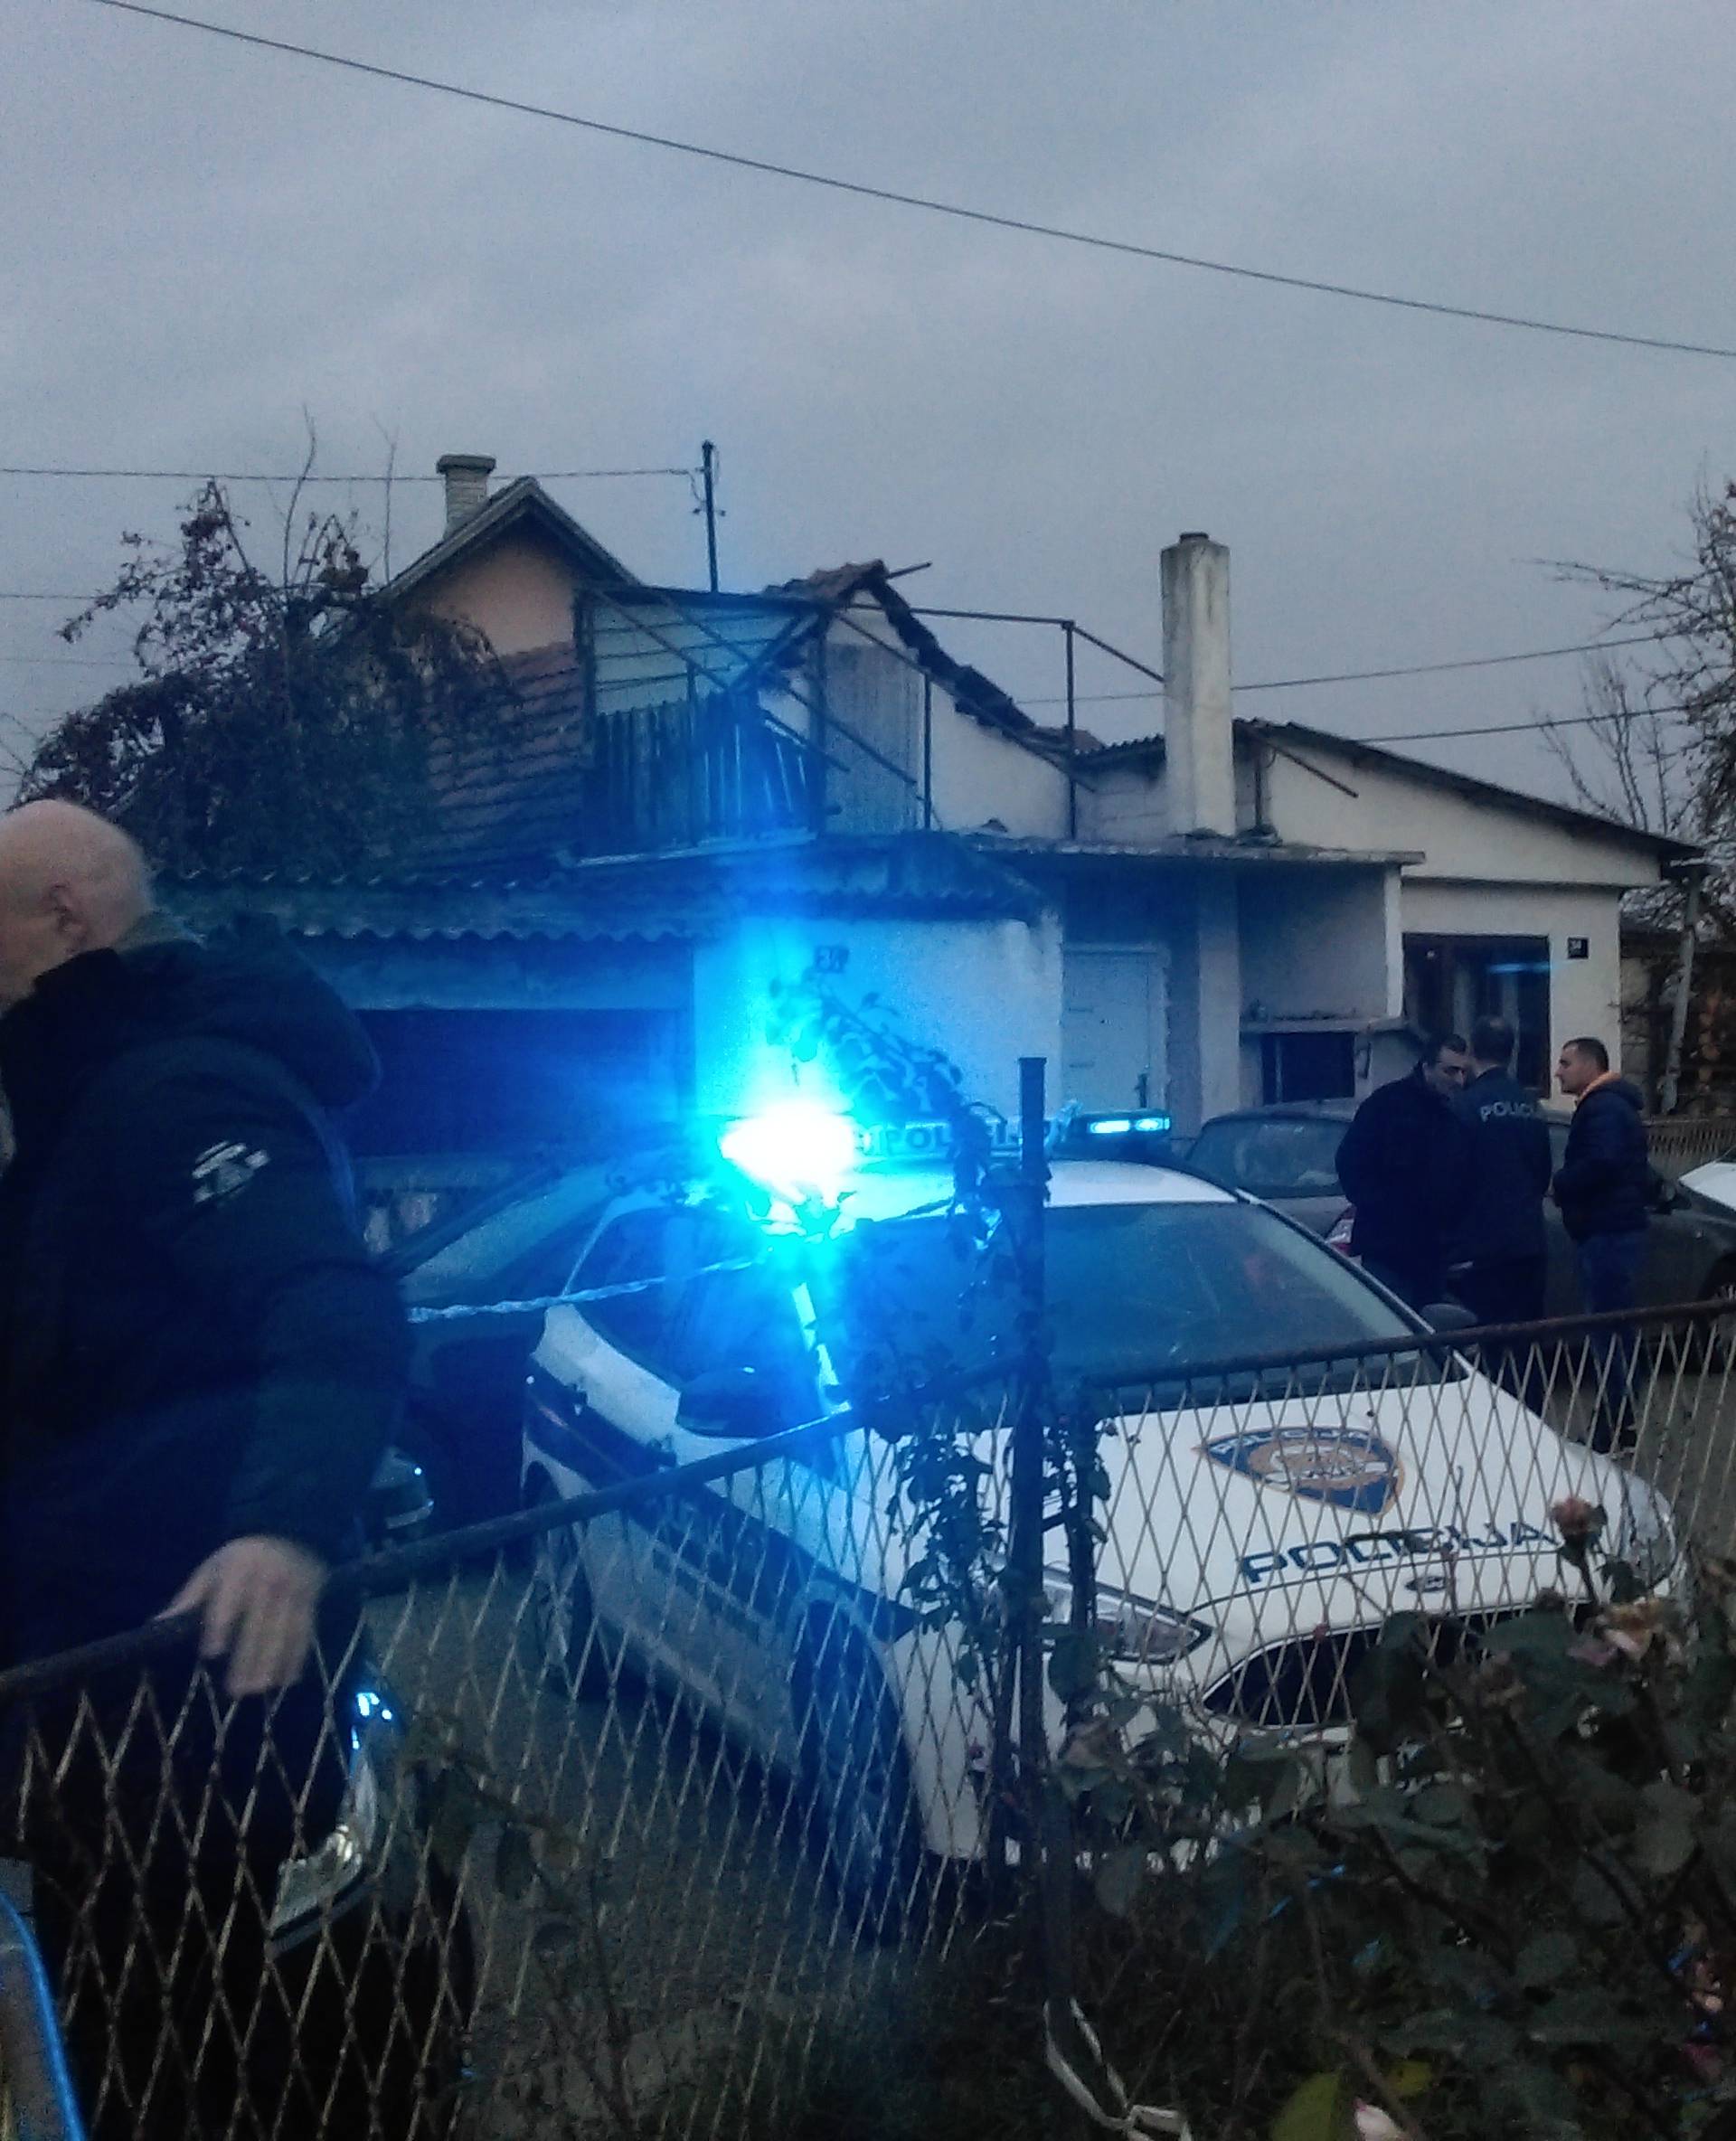 Sumnja se na nasilnu smrt: U kući u Zagrebu našli dva tijela